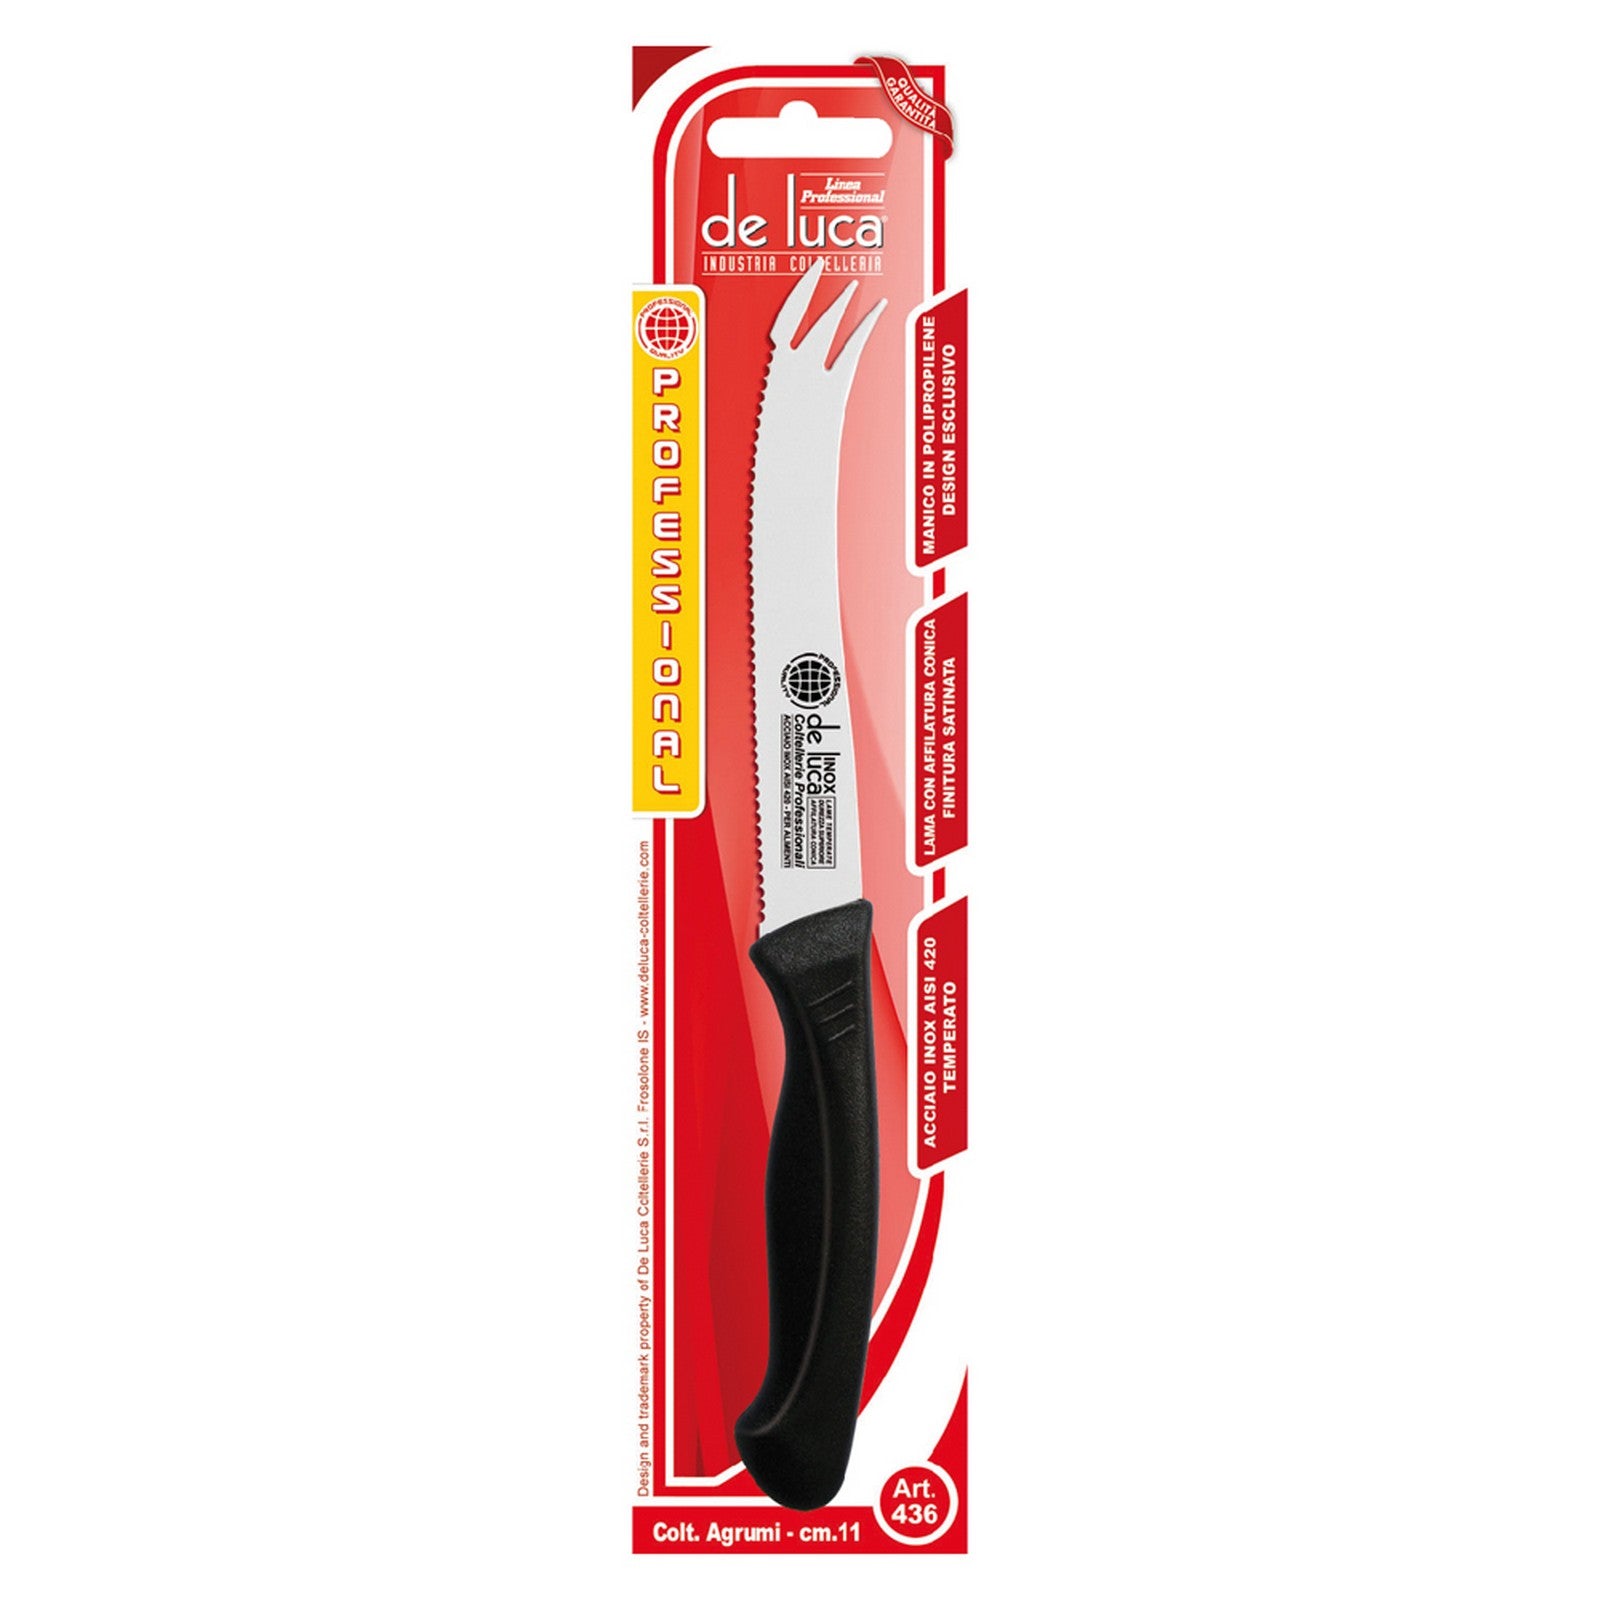 coltello per agrumi seghettato lama mm 110 cod:ferx.7904210nlm